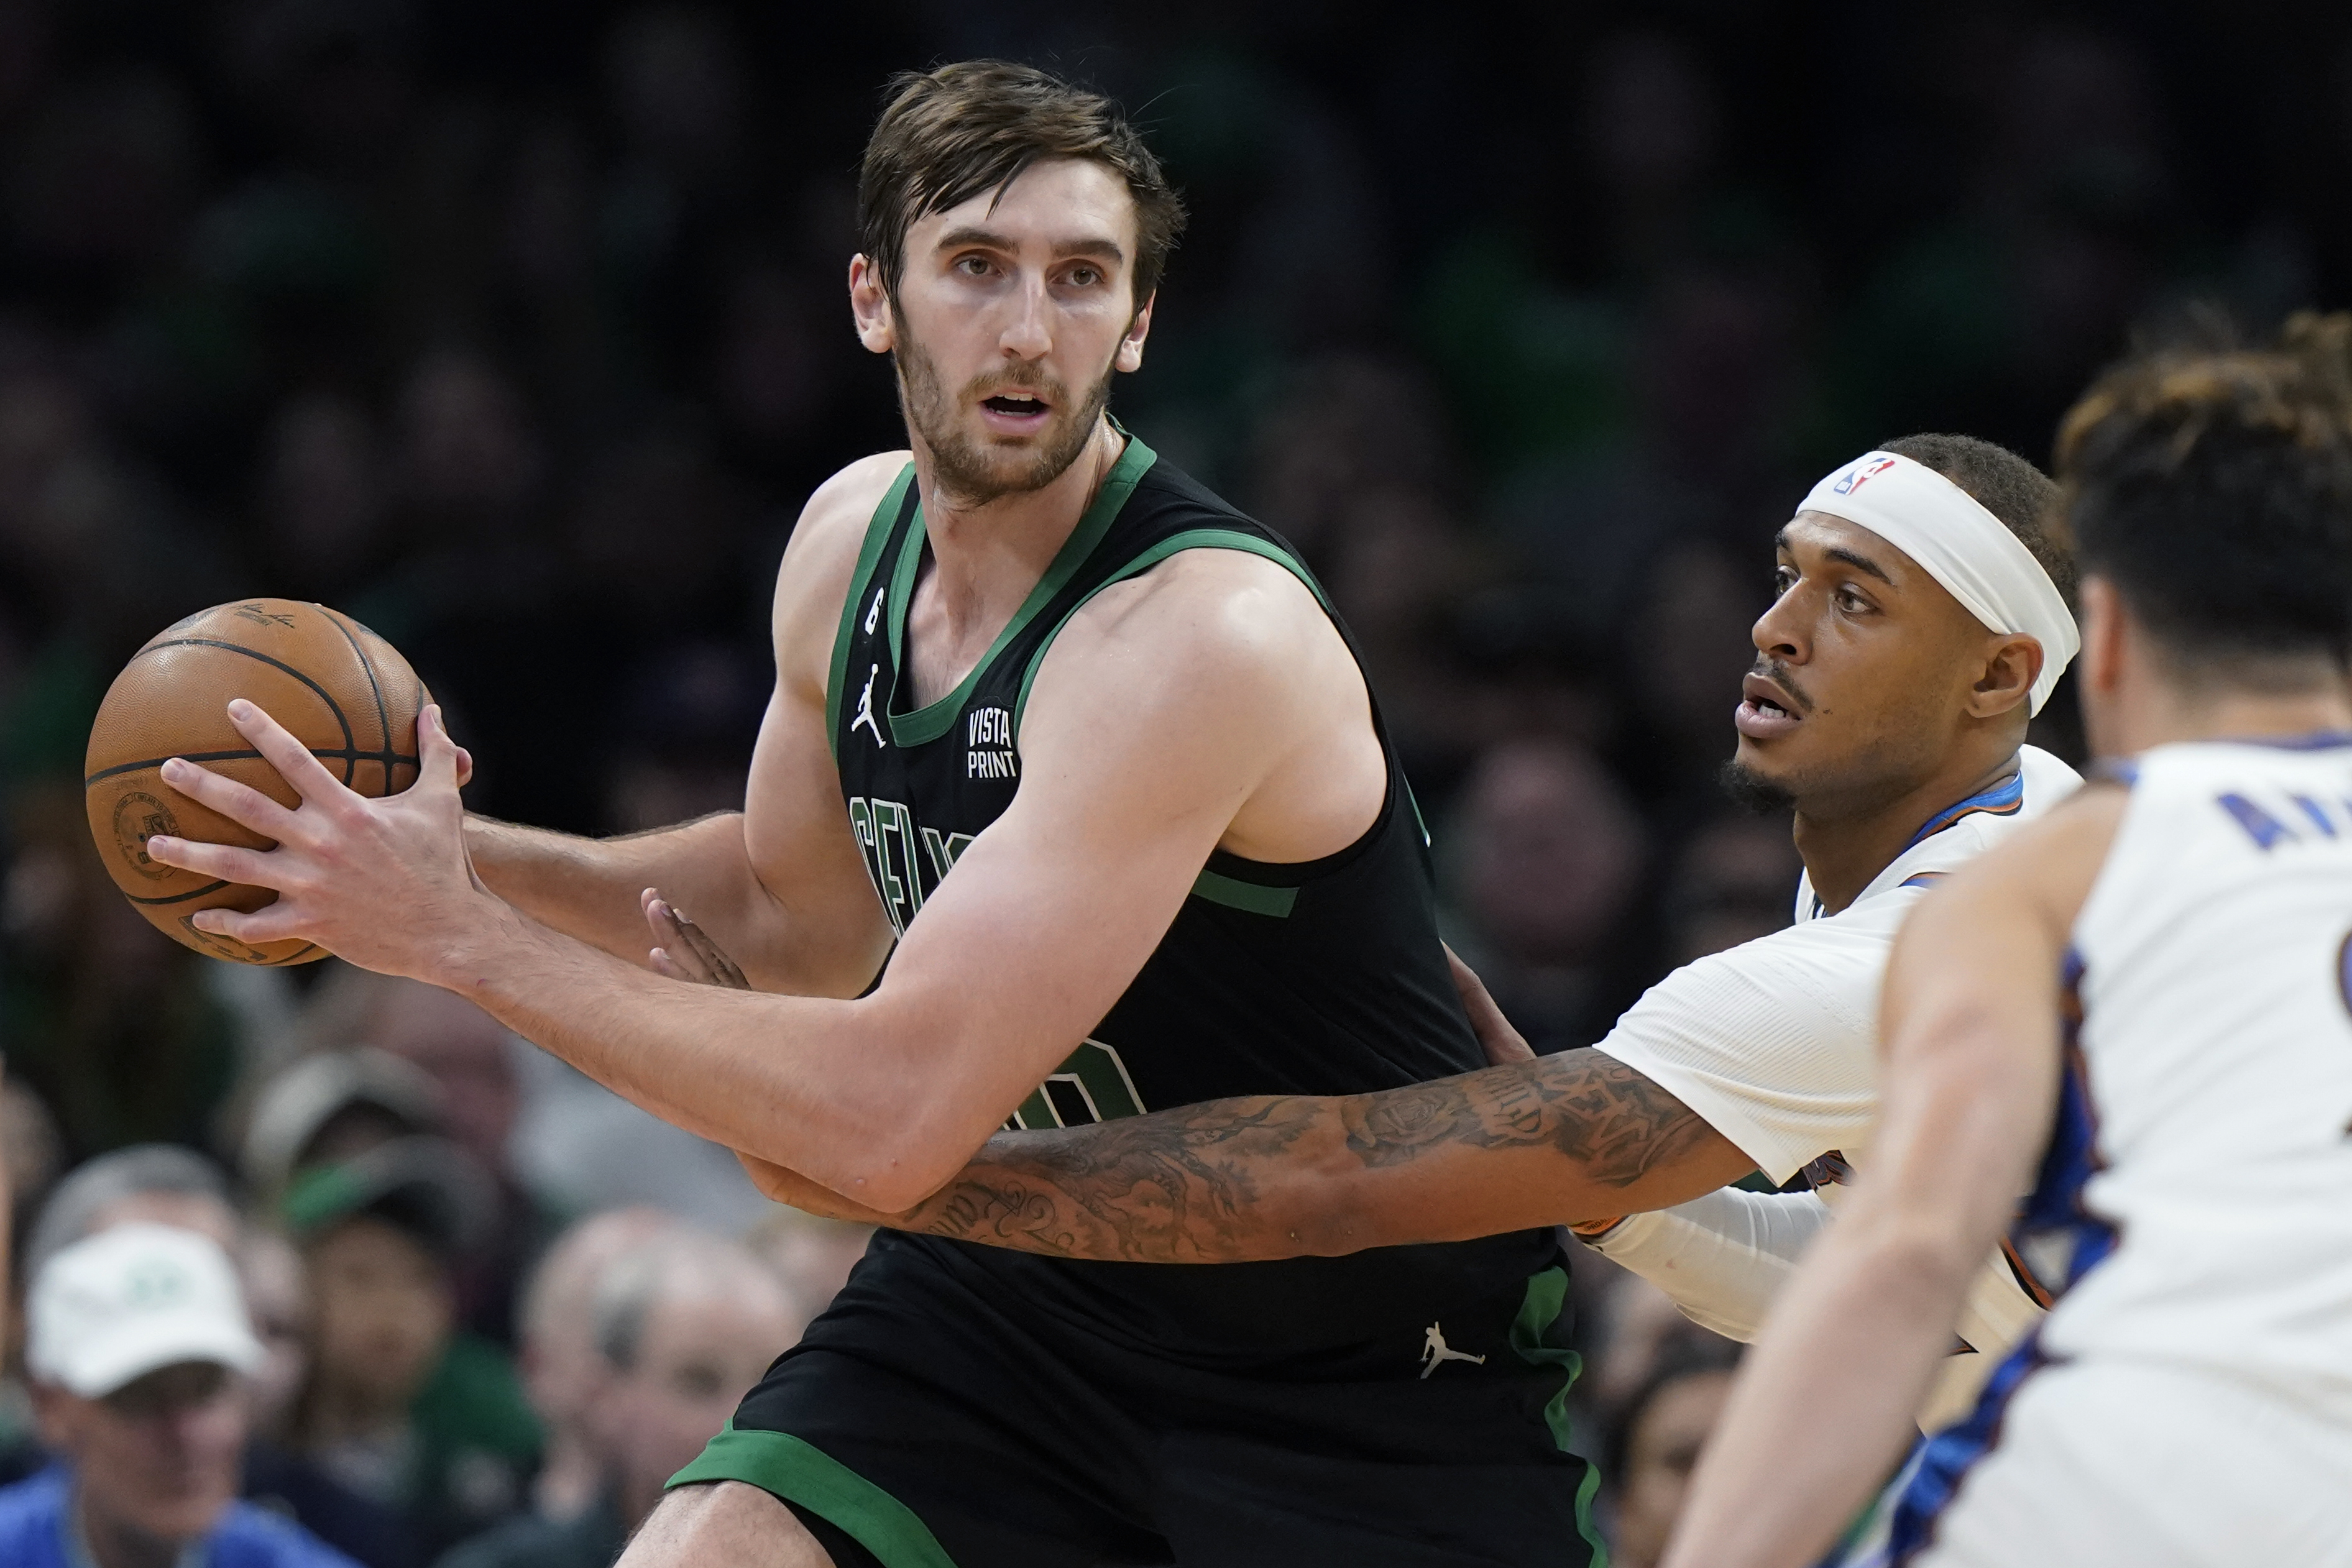 NBA-Boston''Celtics''custom Men Women Youth 40 Luke Kornet 43